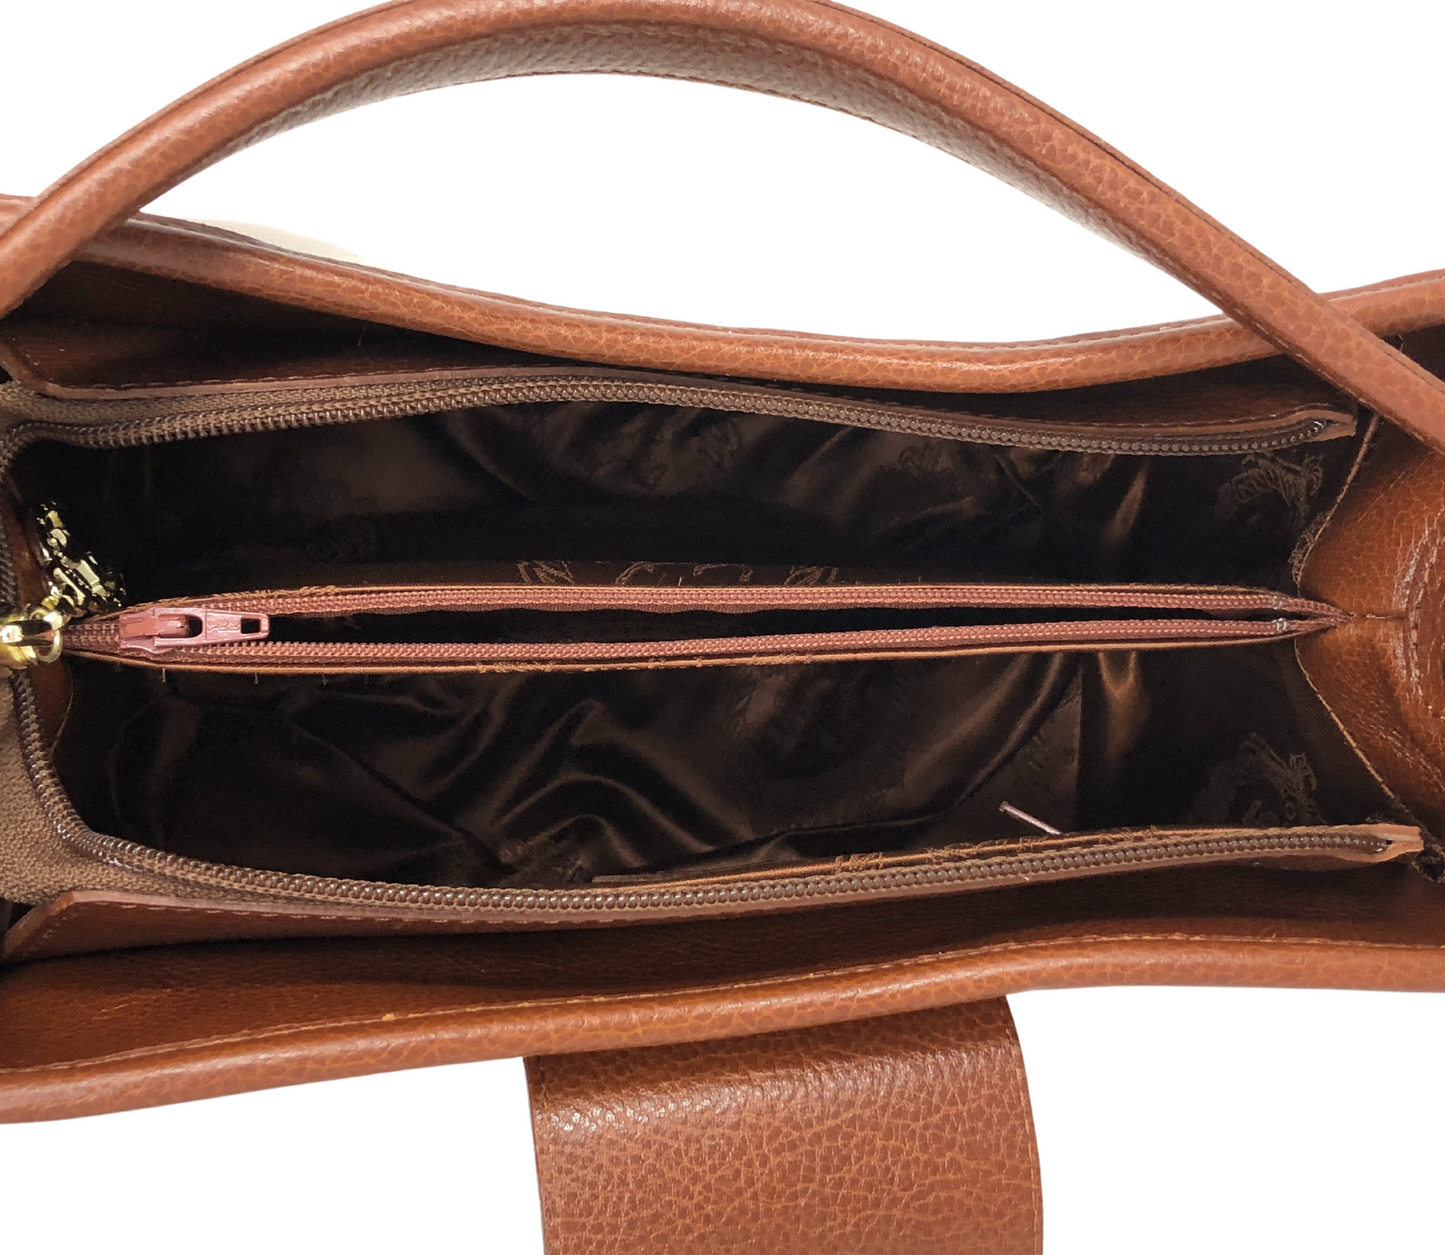 Cavalinho Honor Handbag - DarkRed - 18190429.15-Internal0157.34